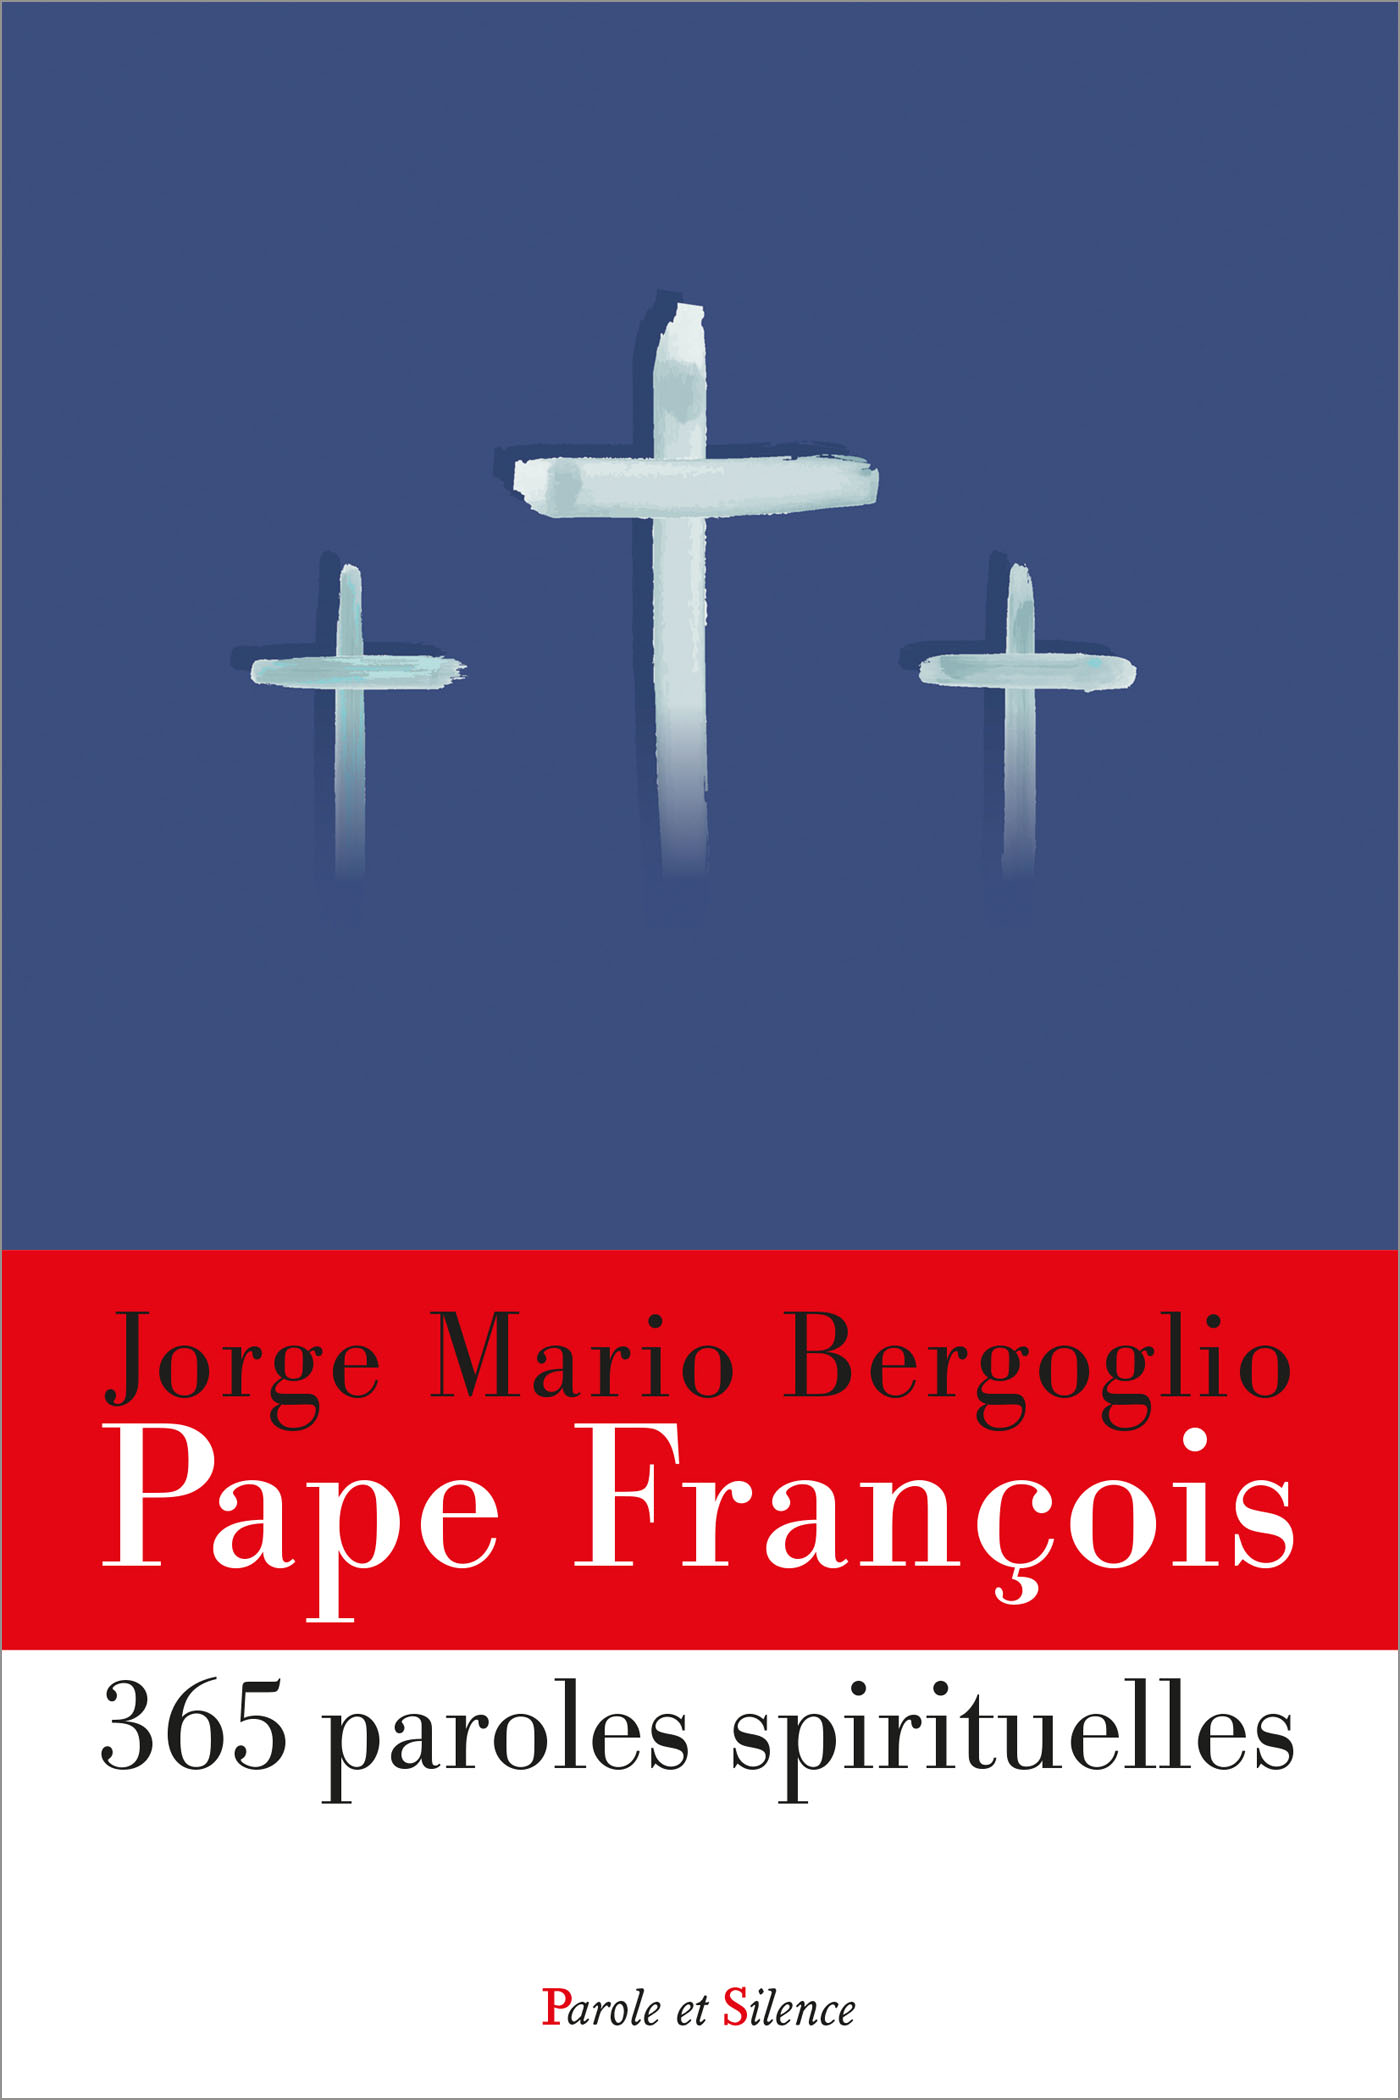 365 paroles spirituelles du pape François